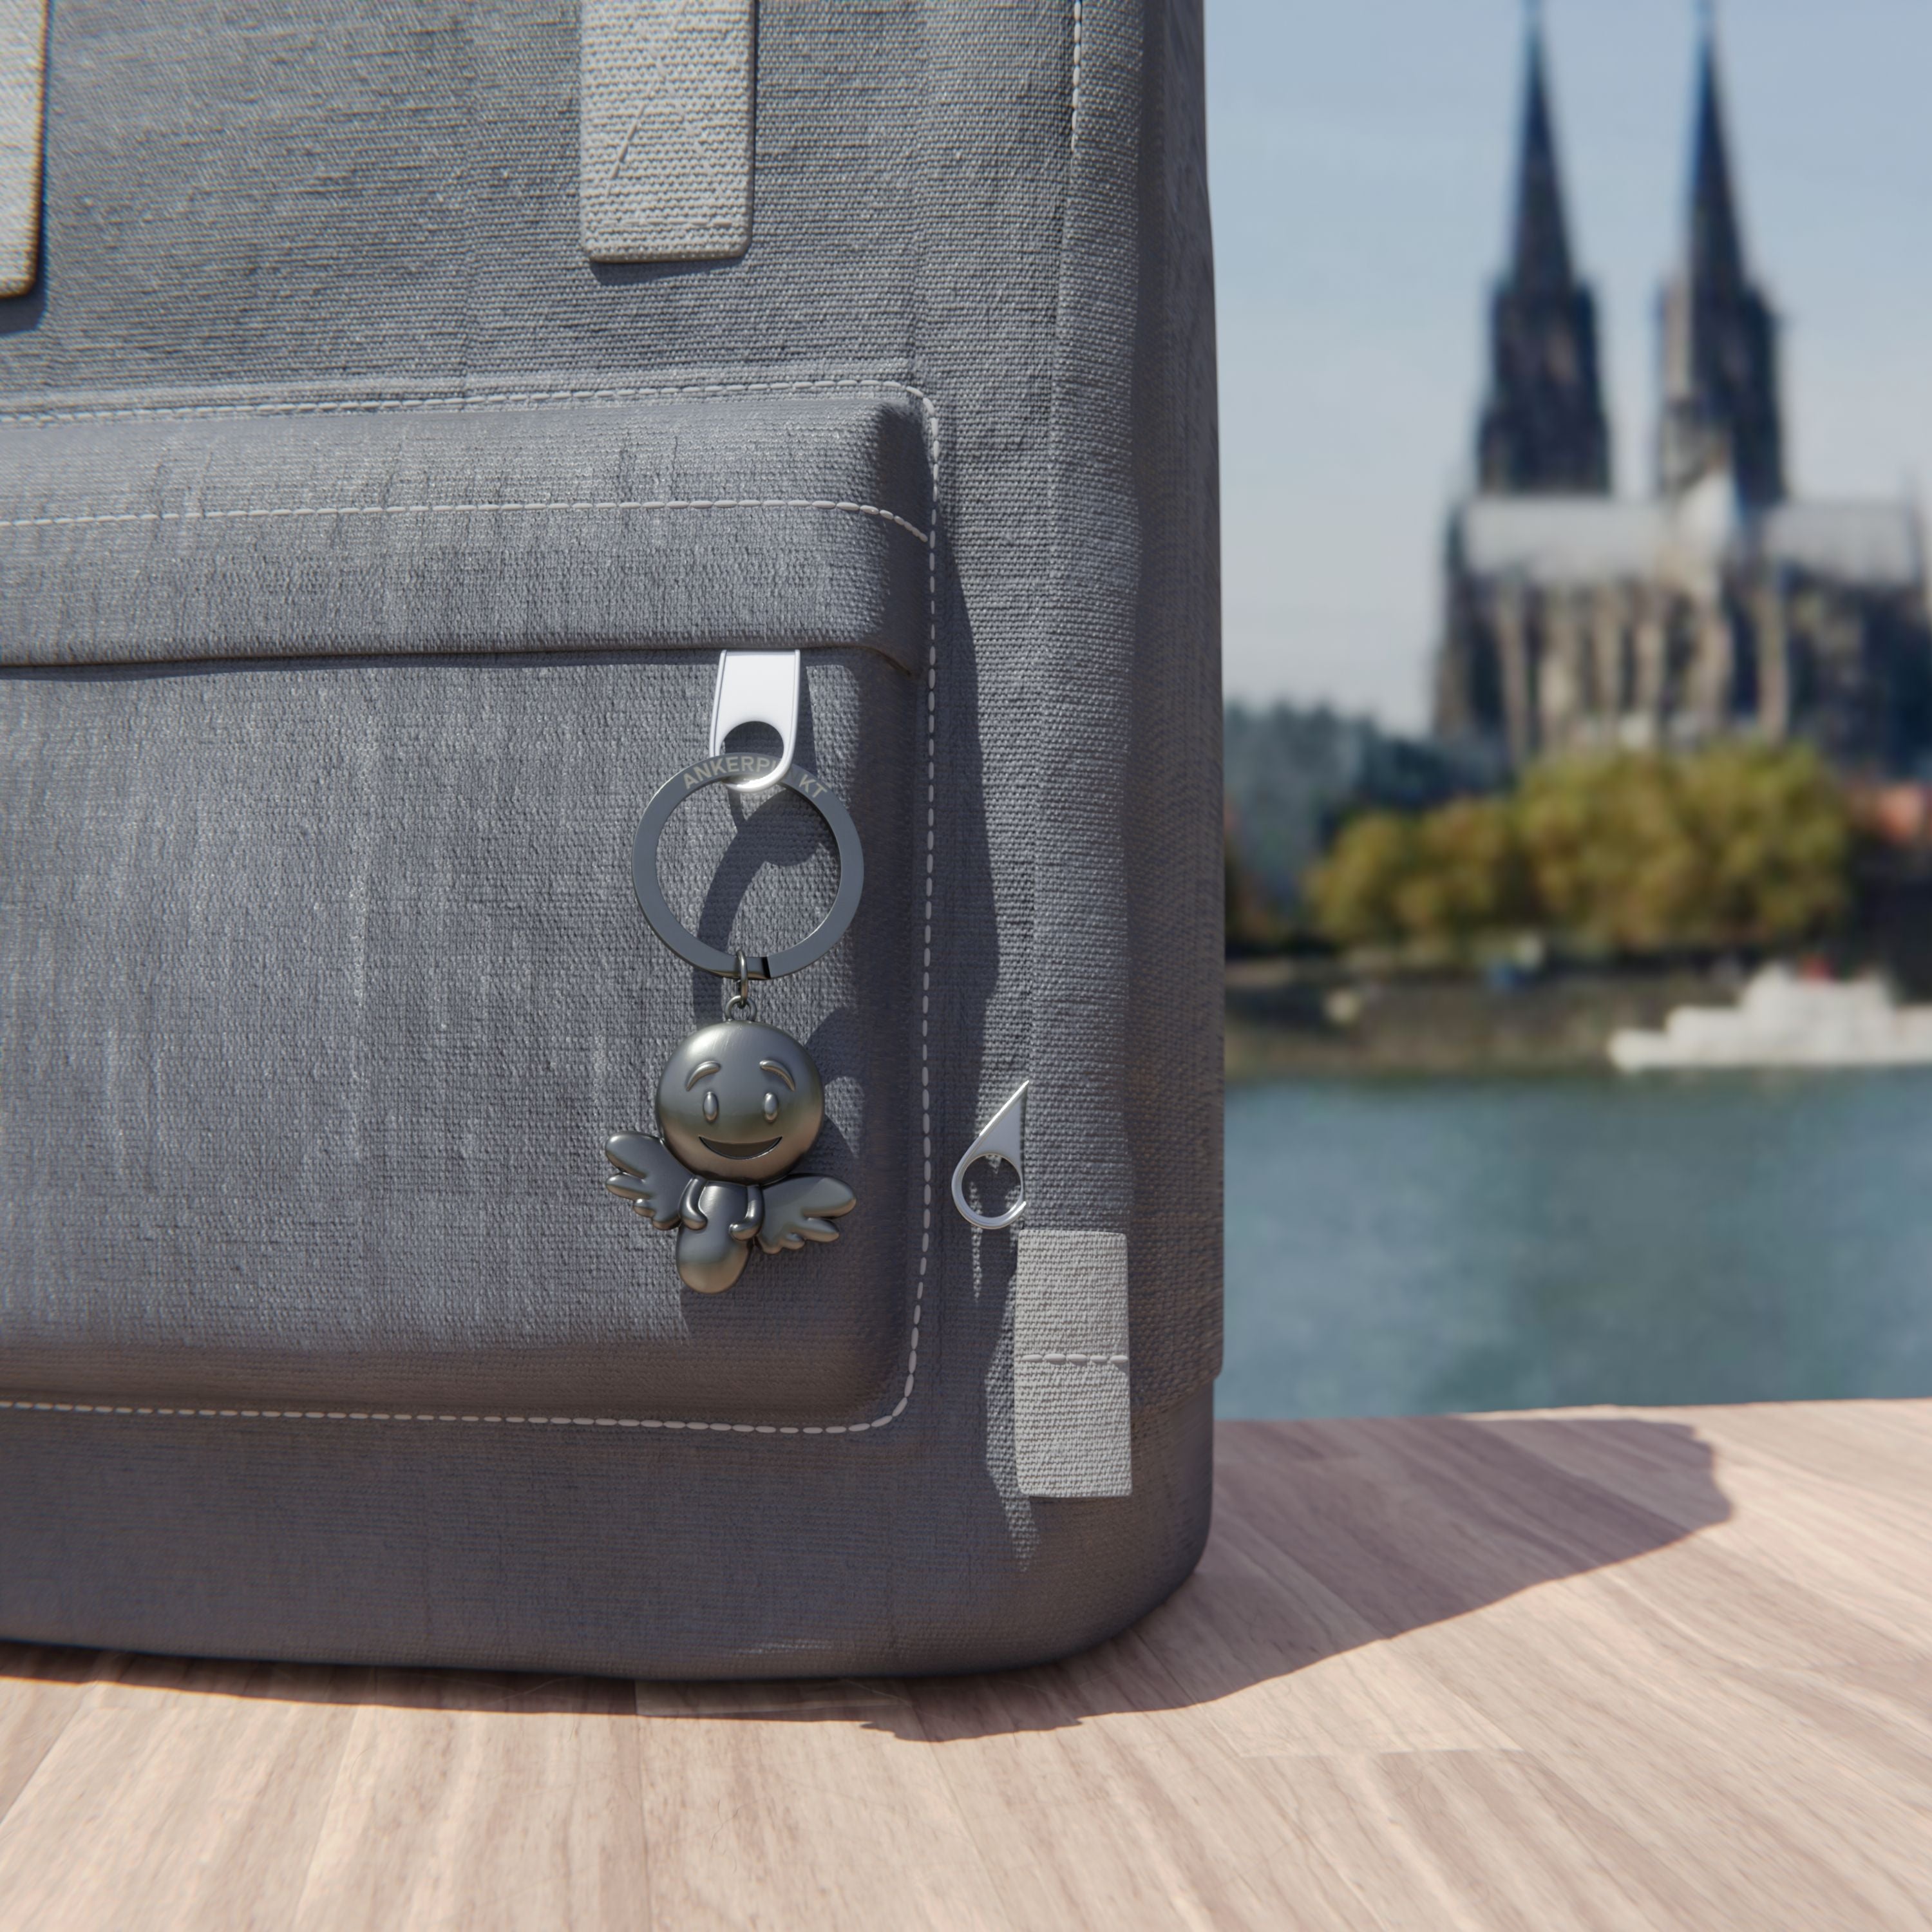 Schlüsselanhänger Engel silber vintage am Rucksack am Rhein, im Hintergrund ist der Kölner Dom zu sehen